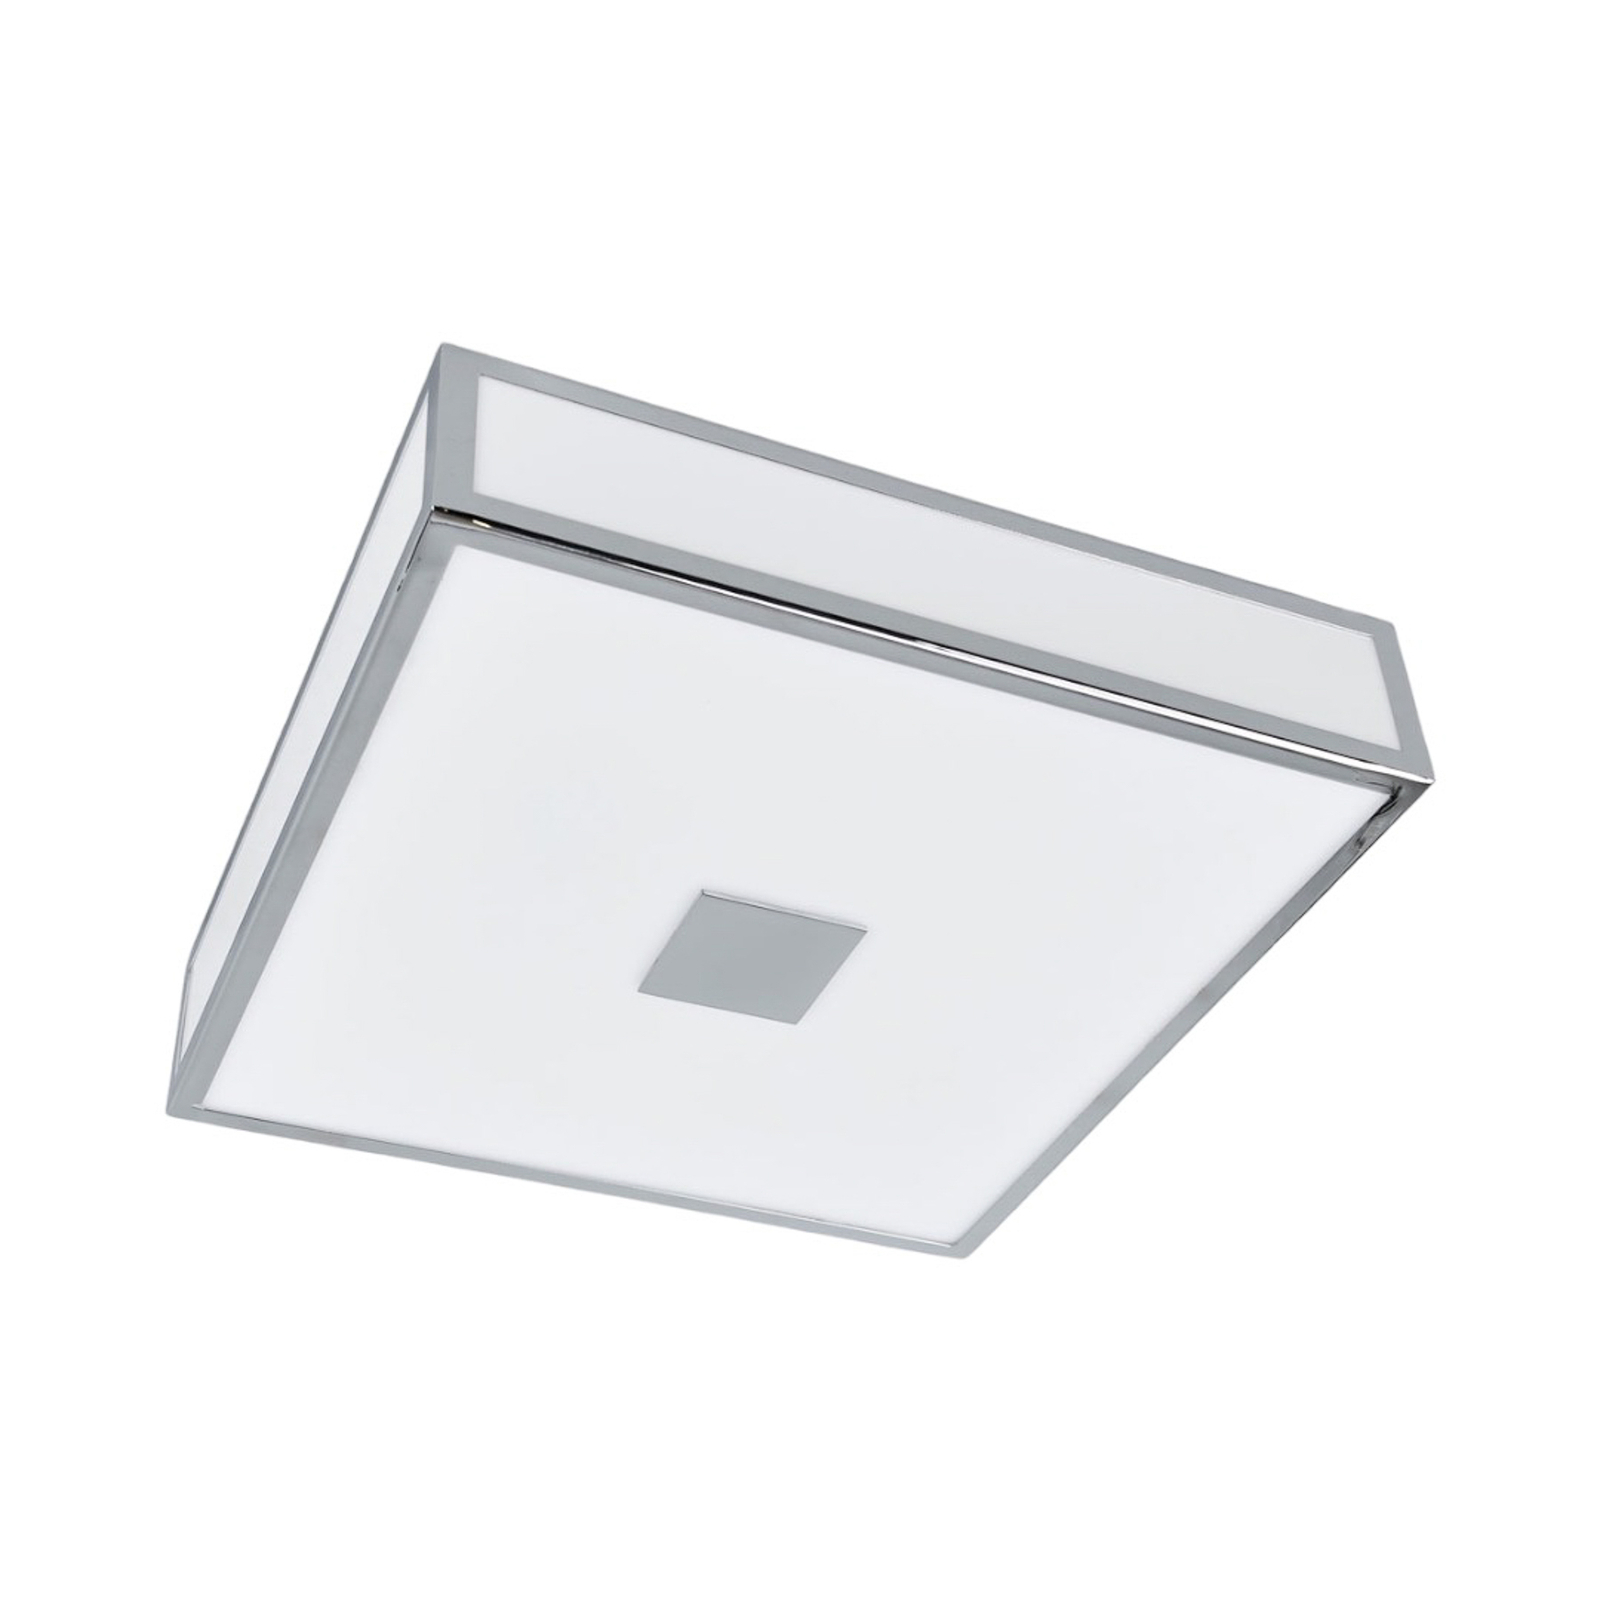 Eniola - square ceiling light, IP44